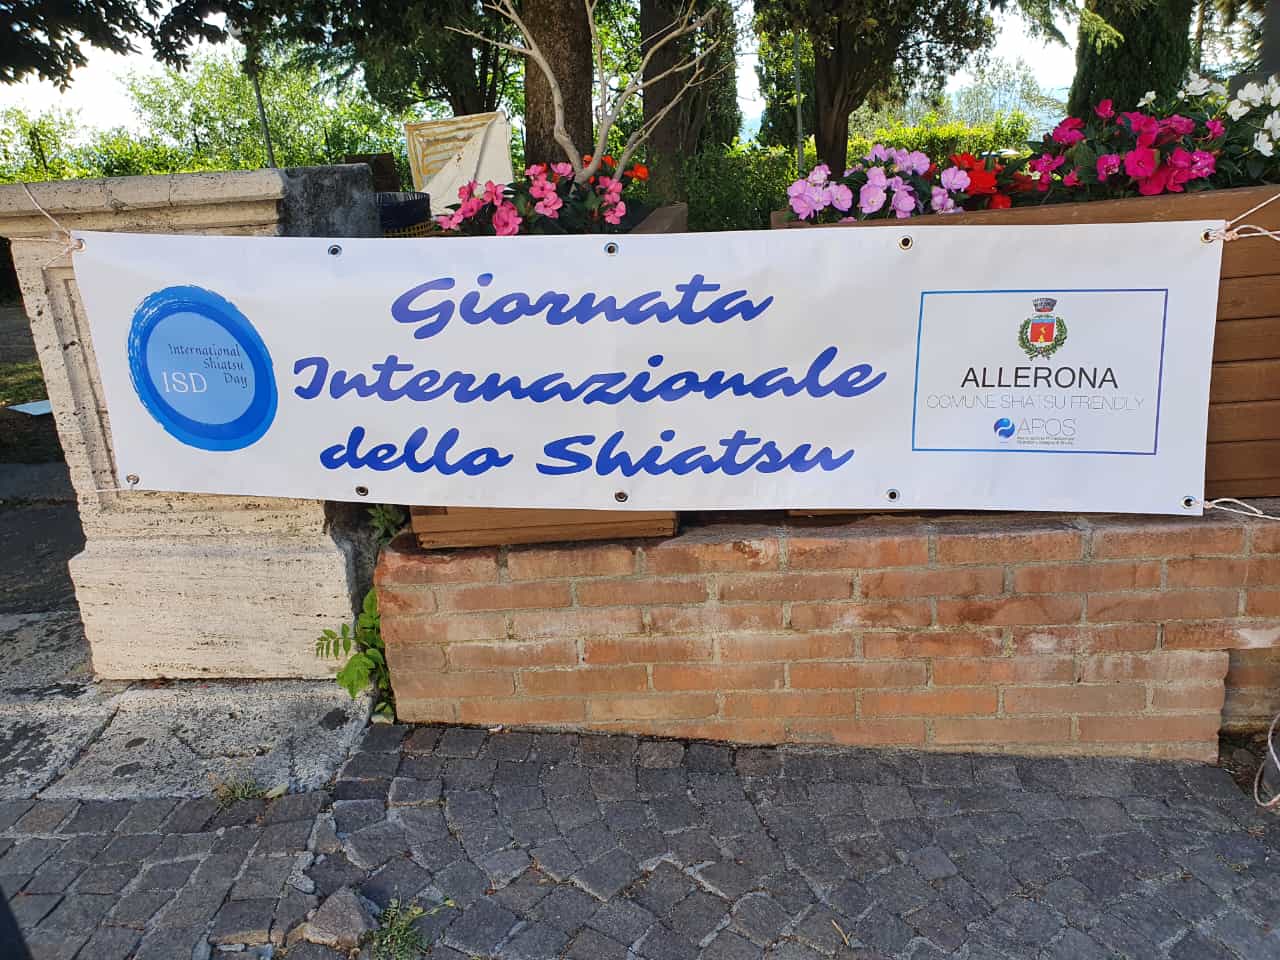 Znak z napisem Międzynarodowy Dzień Shiatsu umieszczony przy wejściu do parku publicznego z logo ISD i patronatem gminy Allerona i Apos